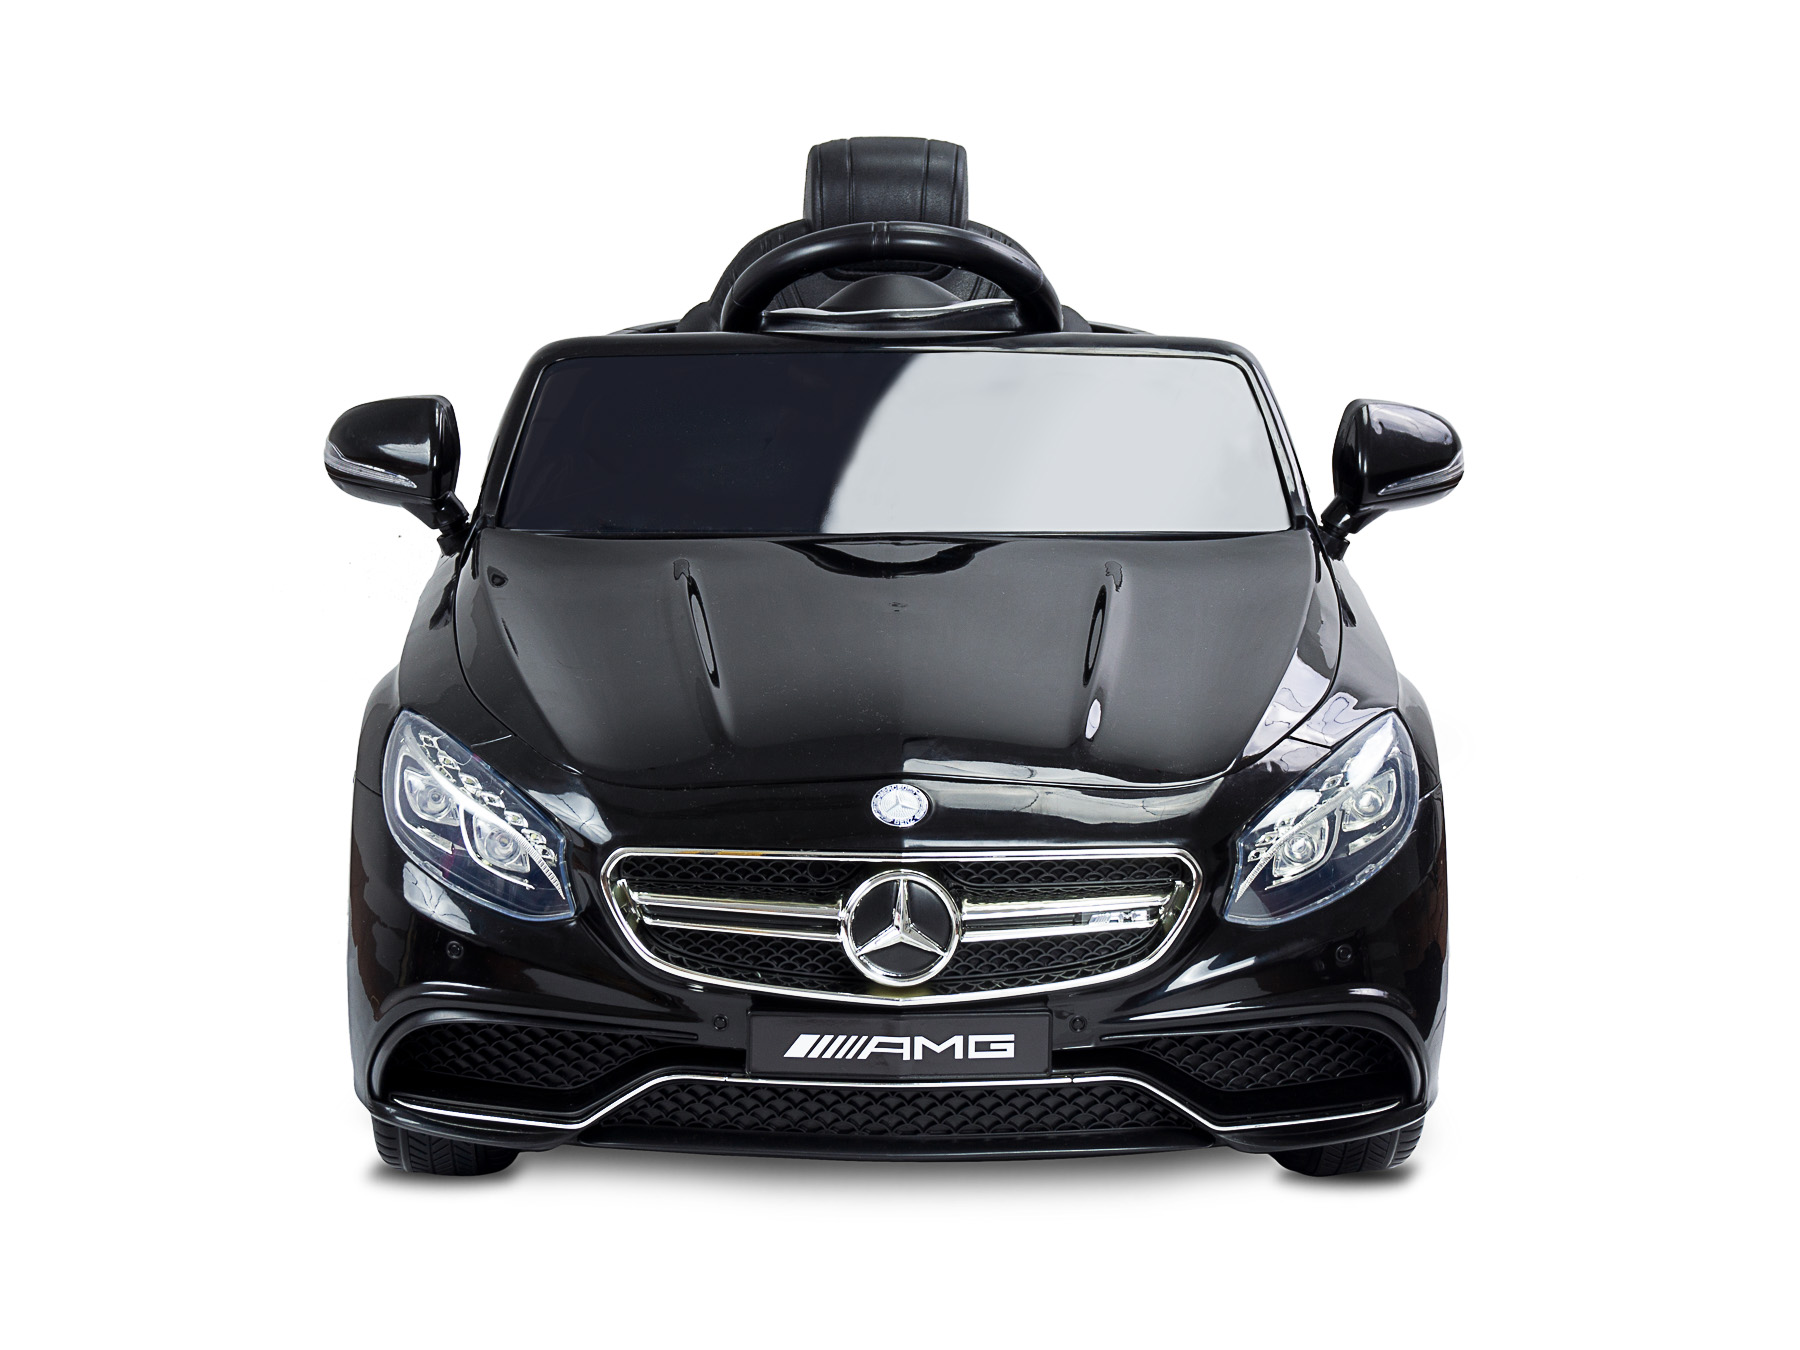 Samochód akumulatorowy dla dzieci Mercedes S63 amg marki Toyz